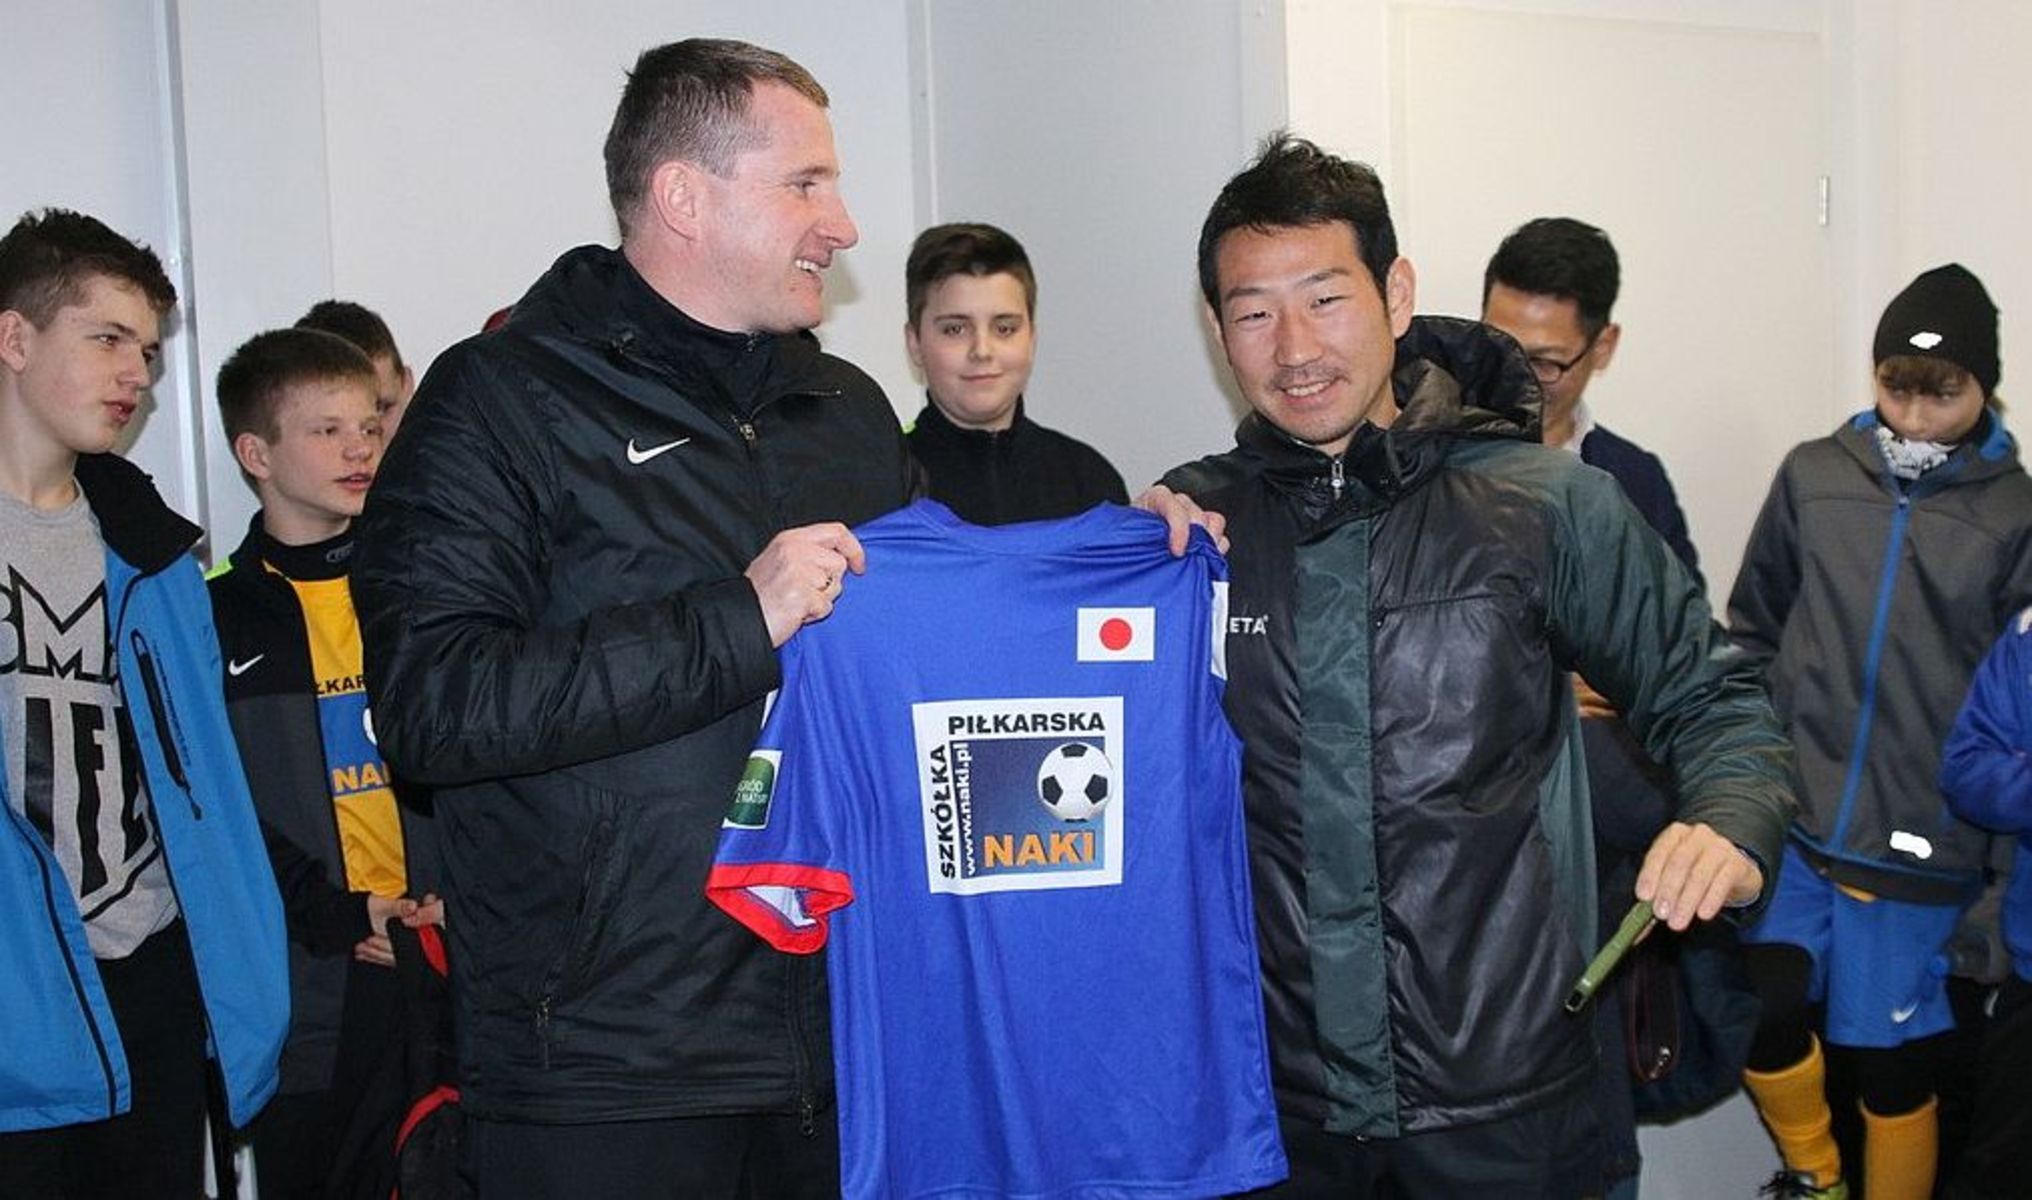 Piłkarze z Japonii trenują wspólnie z Naki Olsztyn. Fot. naki.pl